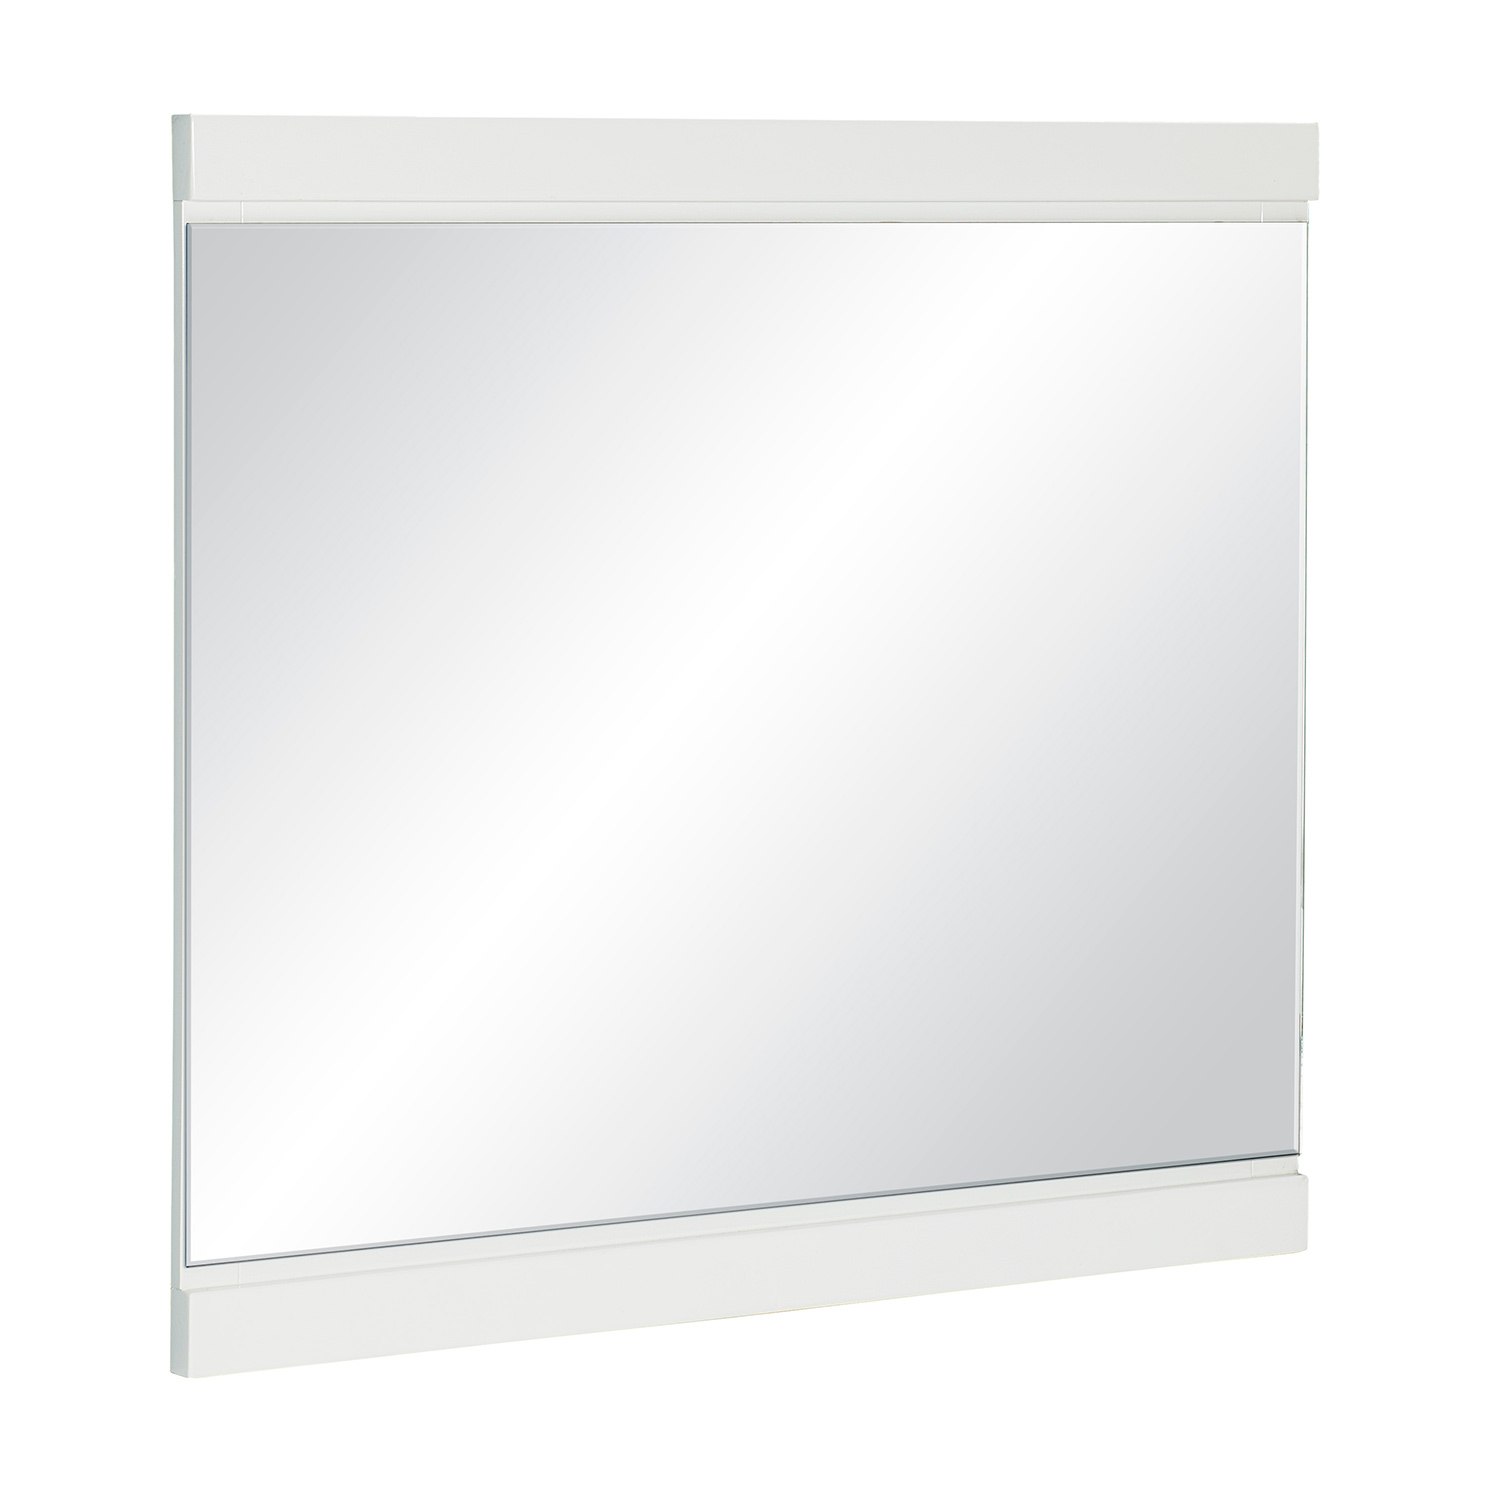 Homelegance Kerren or Keren Mirror - White High Gloss